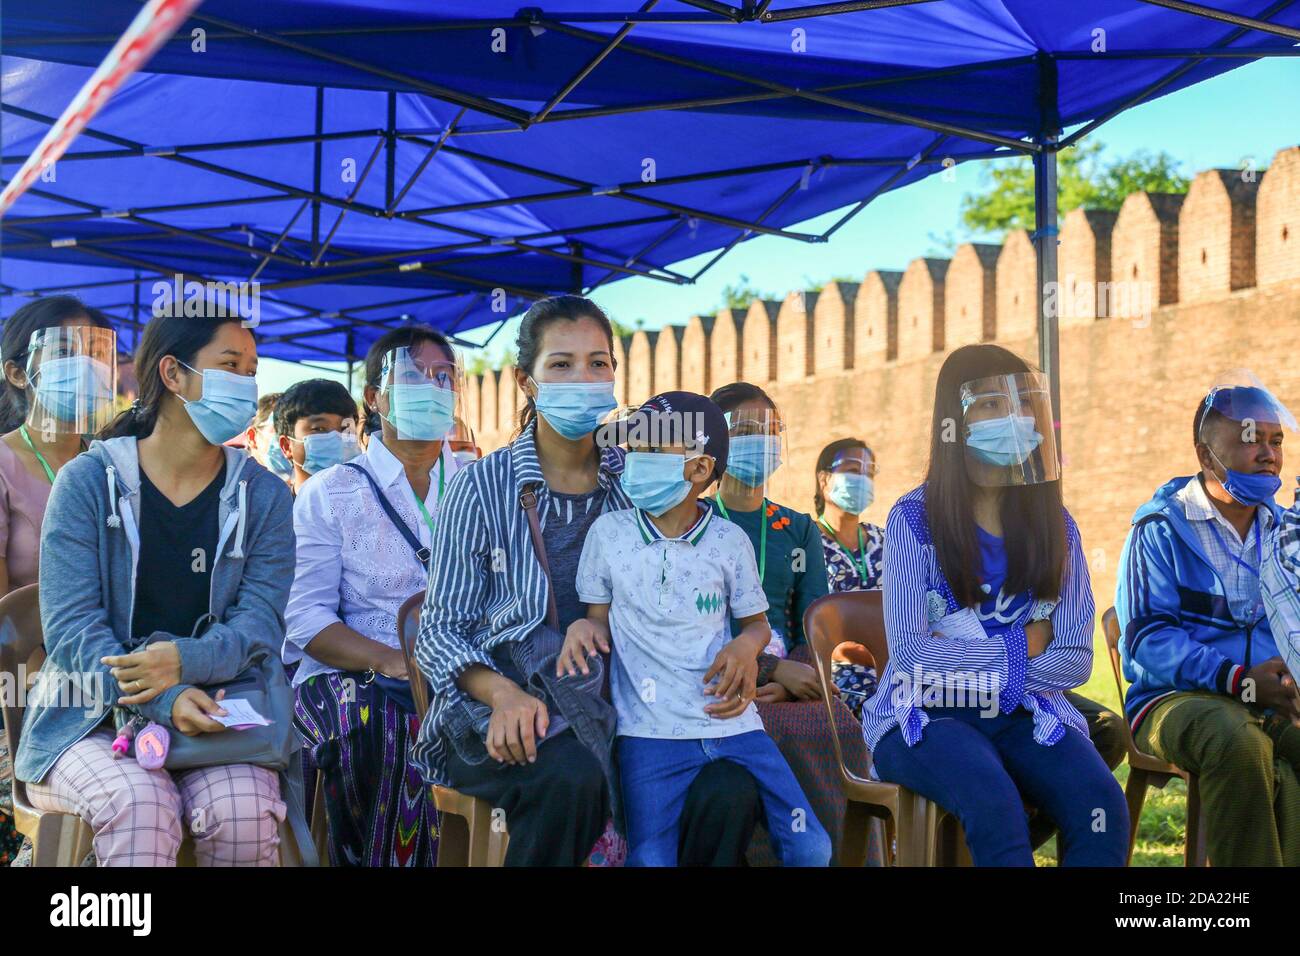 Les citoyens du Myanmar se sont rendus aux urnes pour voter lors de la deuxième élection démocratique depuis la fin du régime militaire, la Ligue nationale pour la démocratie (NLD) Aung San Suu Kyi s’attendait à remporter les élections. Banque D'Images